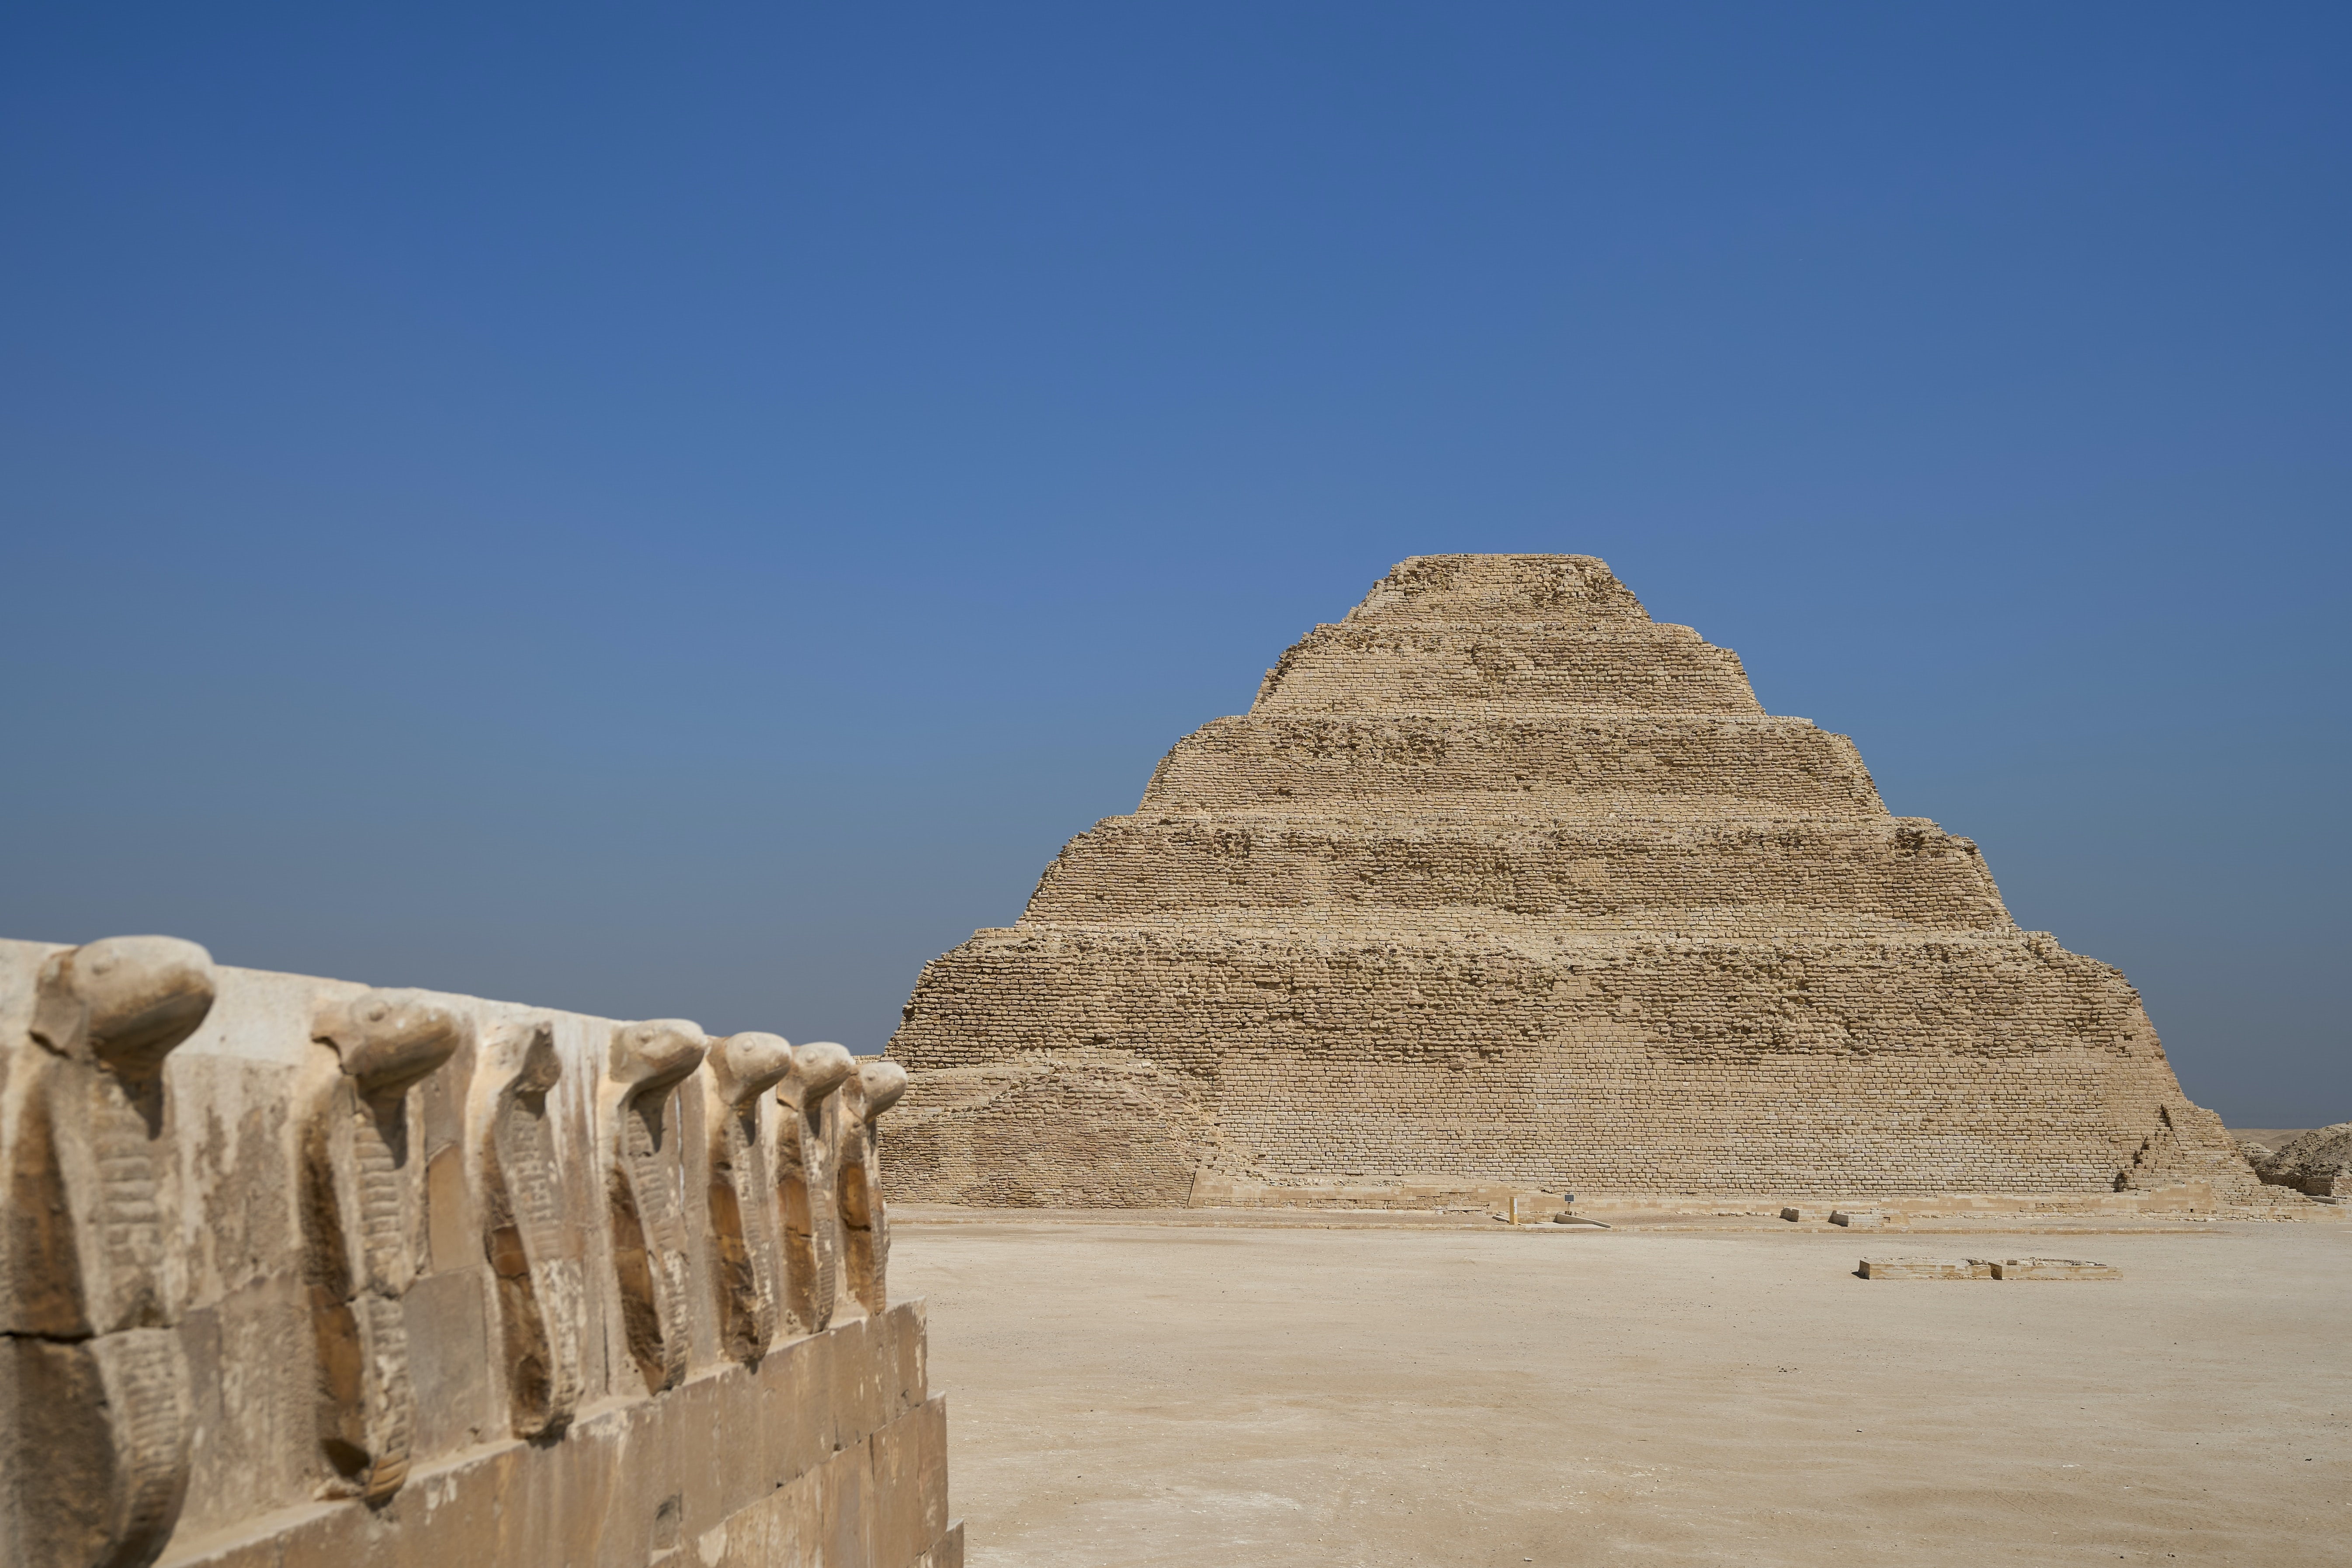 Op de necropolis van Saqqara zijn bijzondere archeologische schatten gevonden